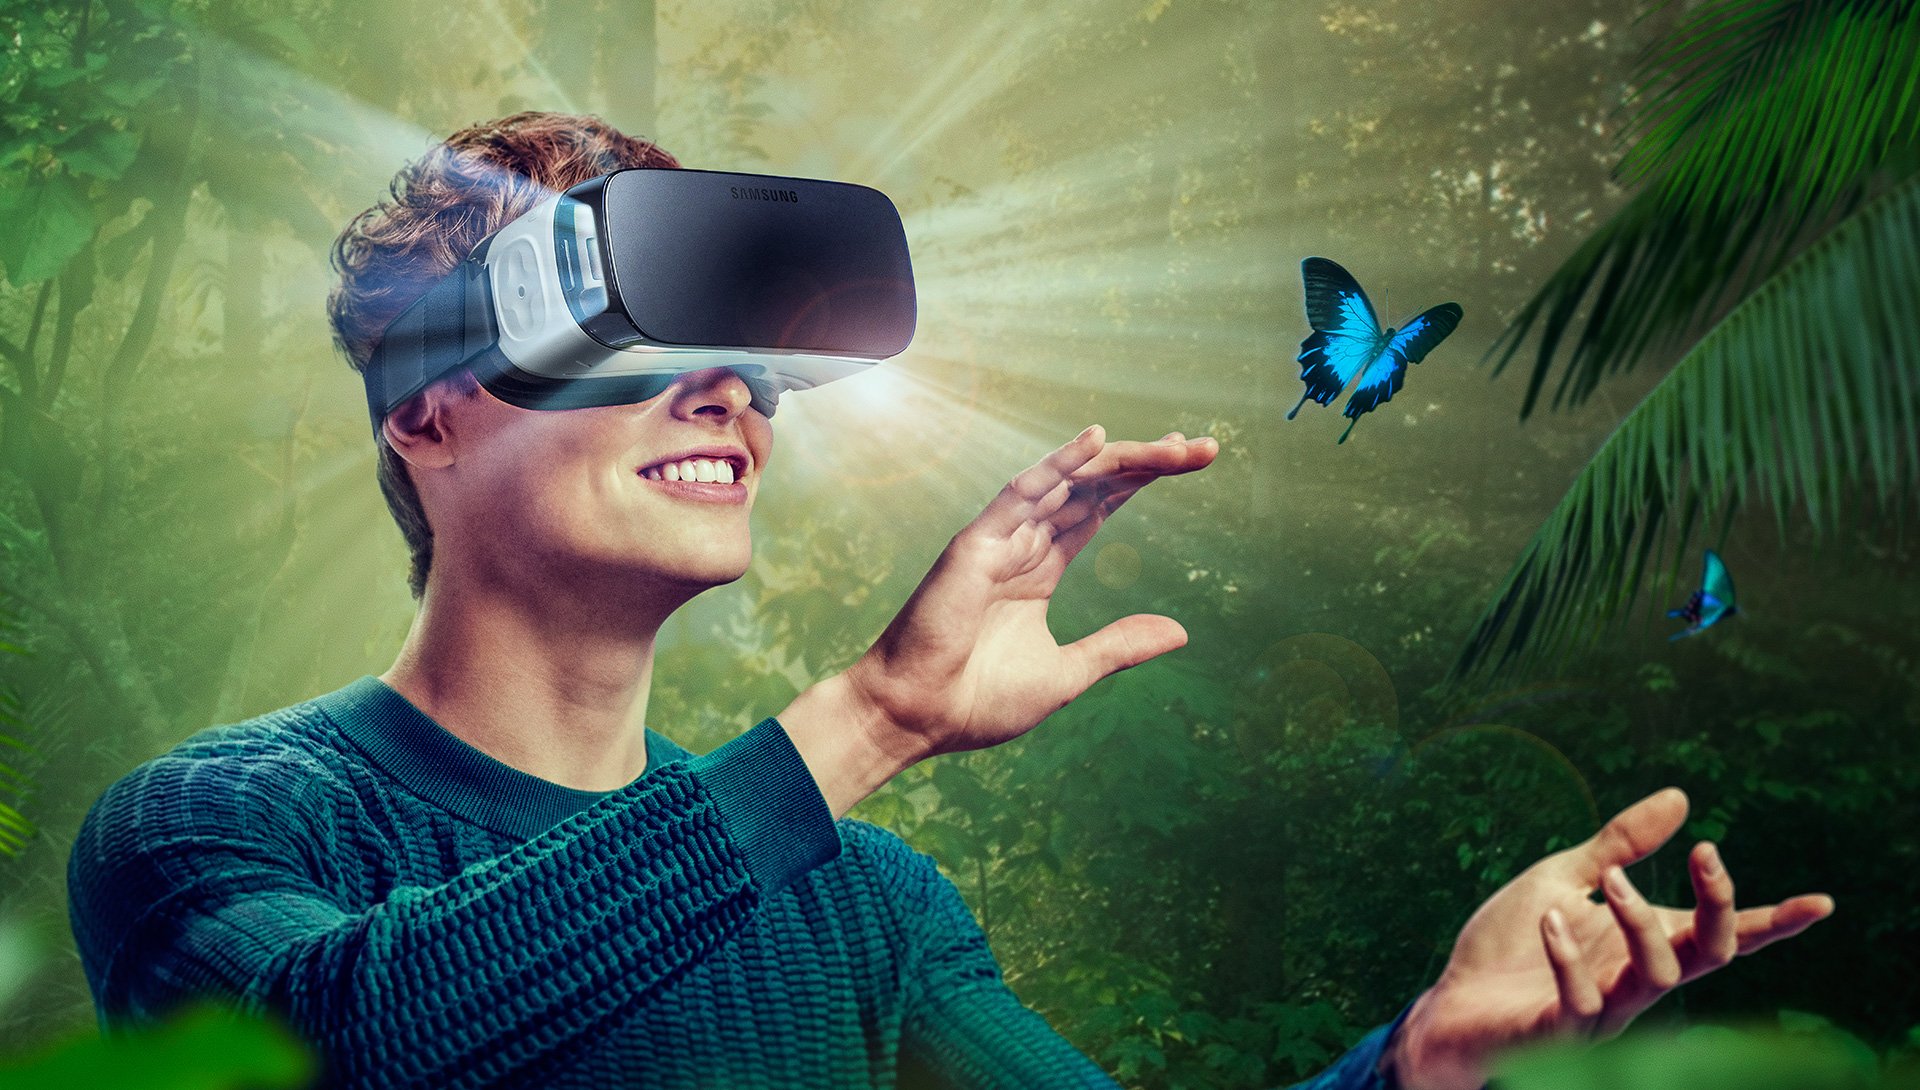 Мечта в игре становится реальностью 47. VR виртуальная реальность. Визуальная реальность. Иртуальная реальность. Очки виртуальной реальности на человеке.